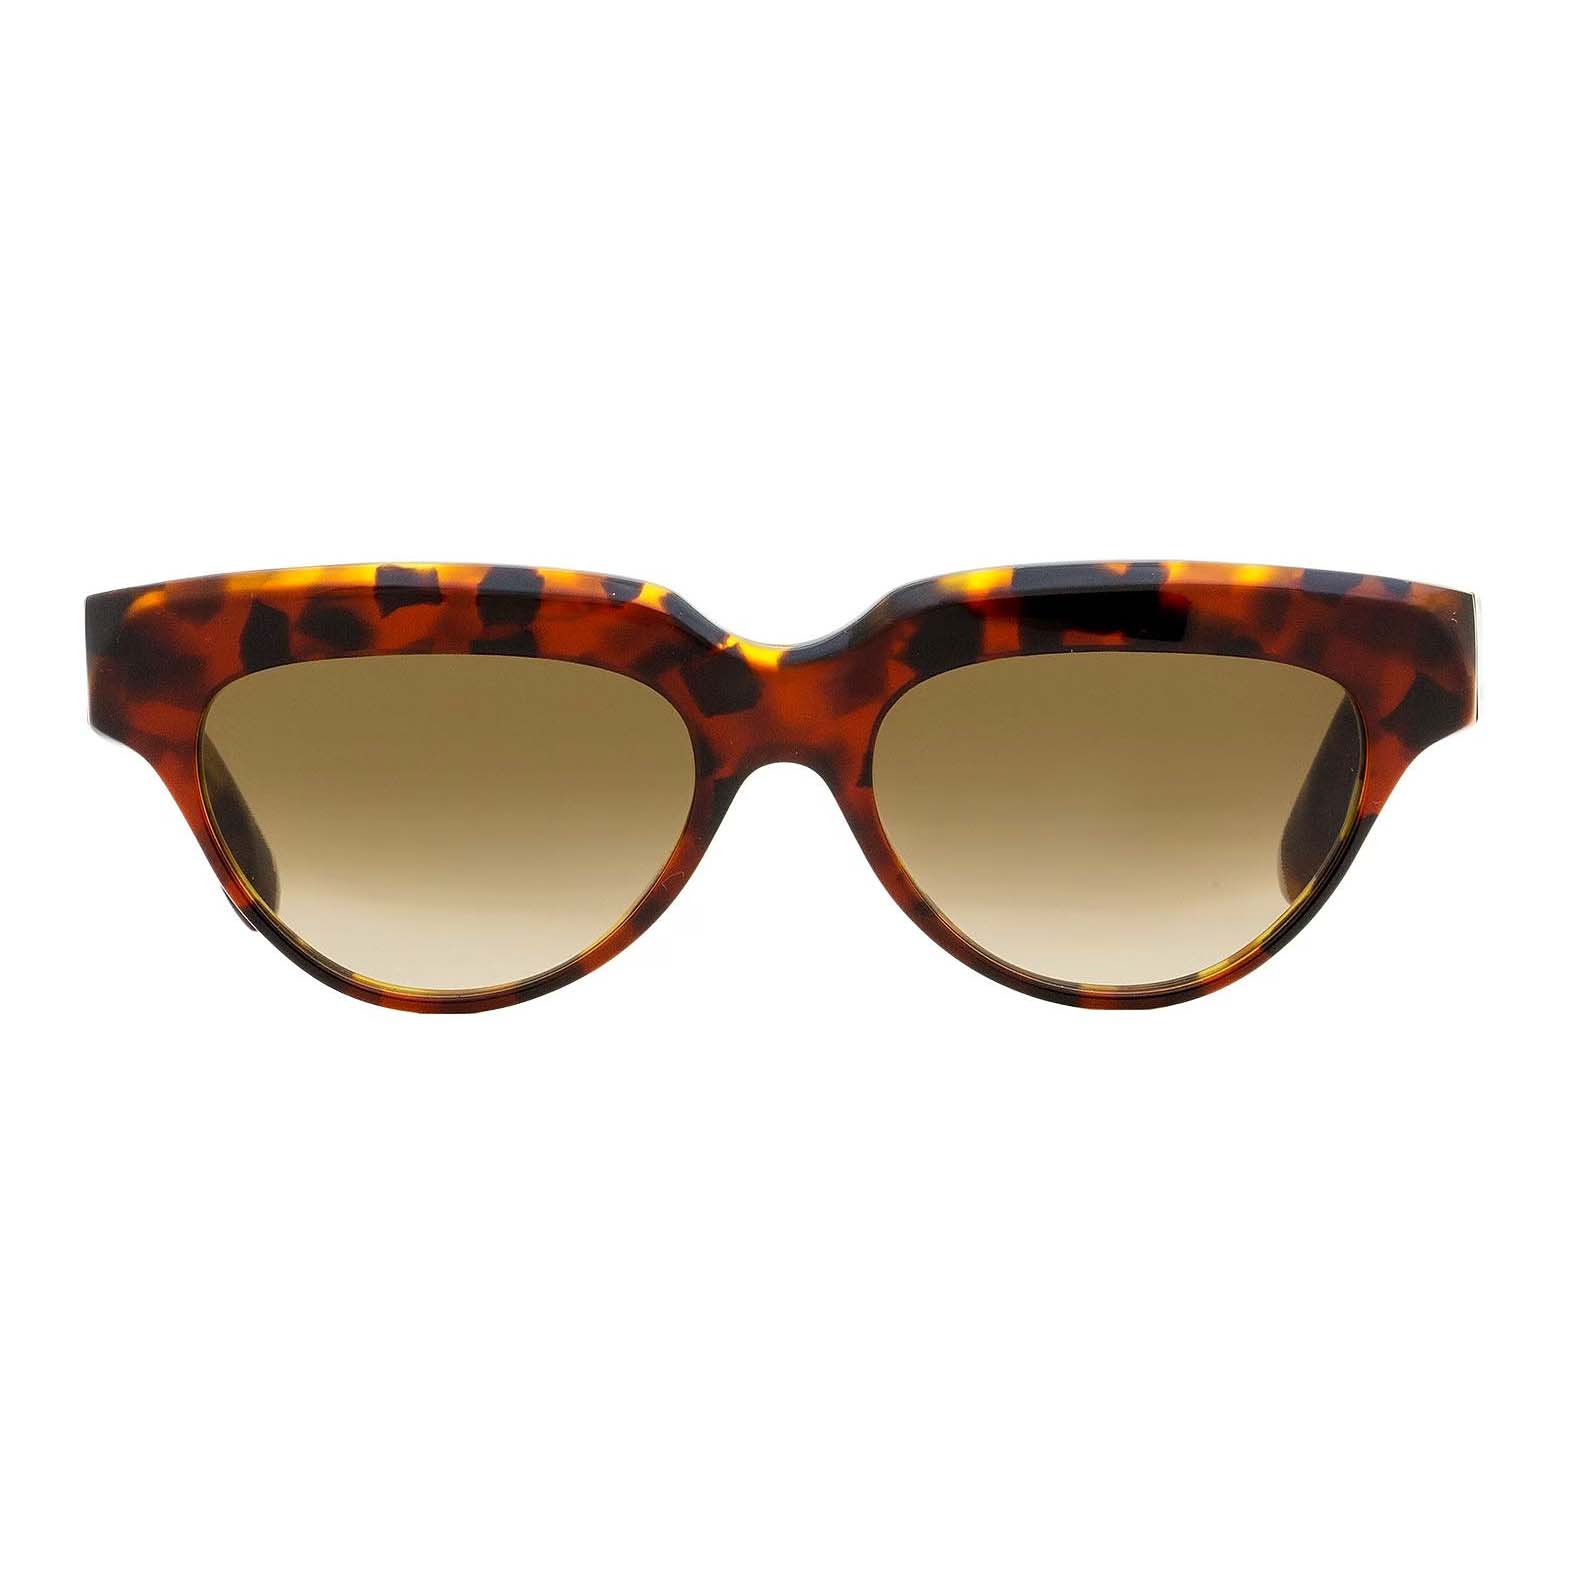 Солнцезащитные очки Victoria Beckham Cateye VB602S, красный/мультиколор солнцезащитные очки max mara кошачий глаз оправа пластик для женщин разноцветный